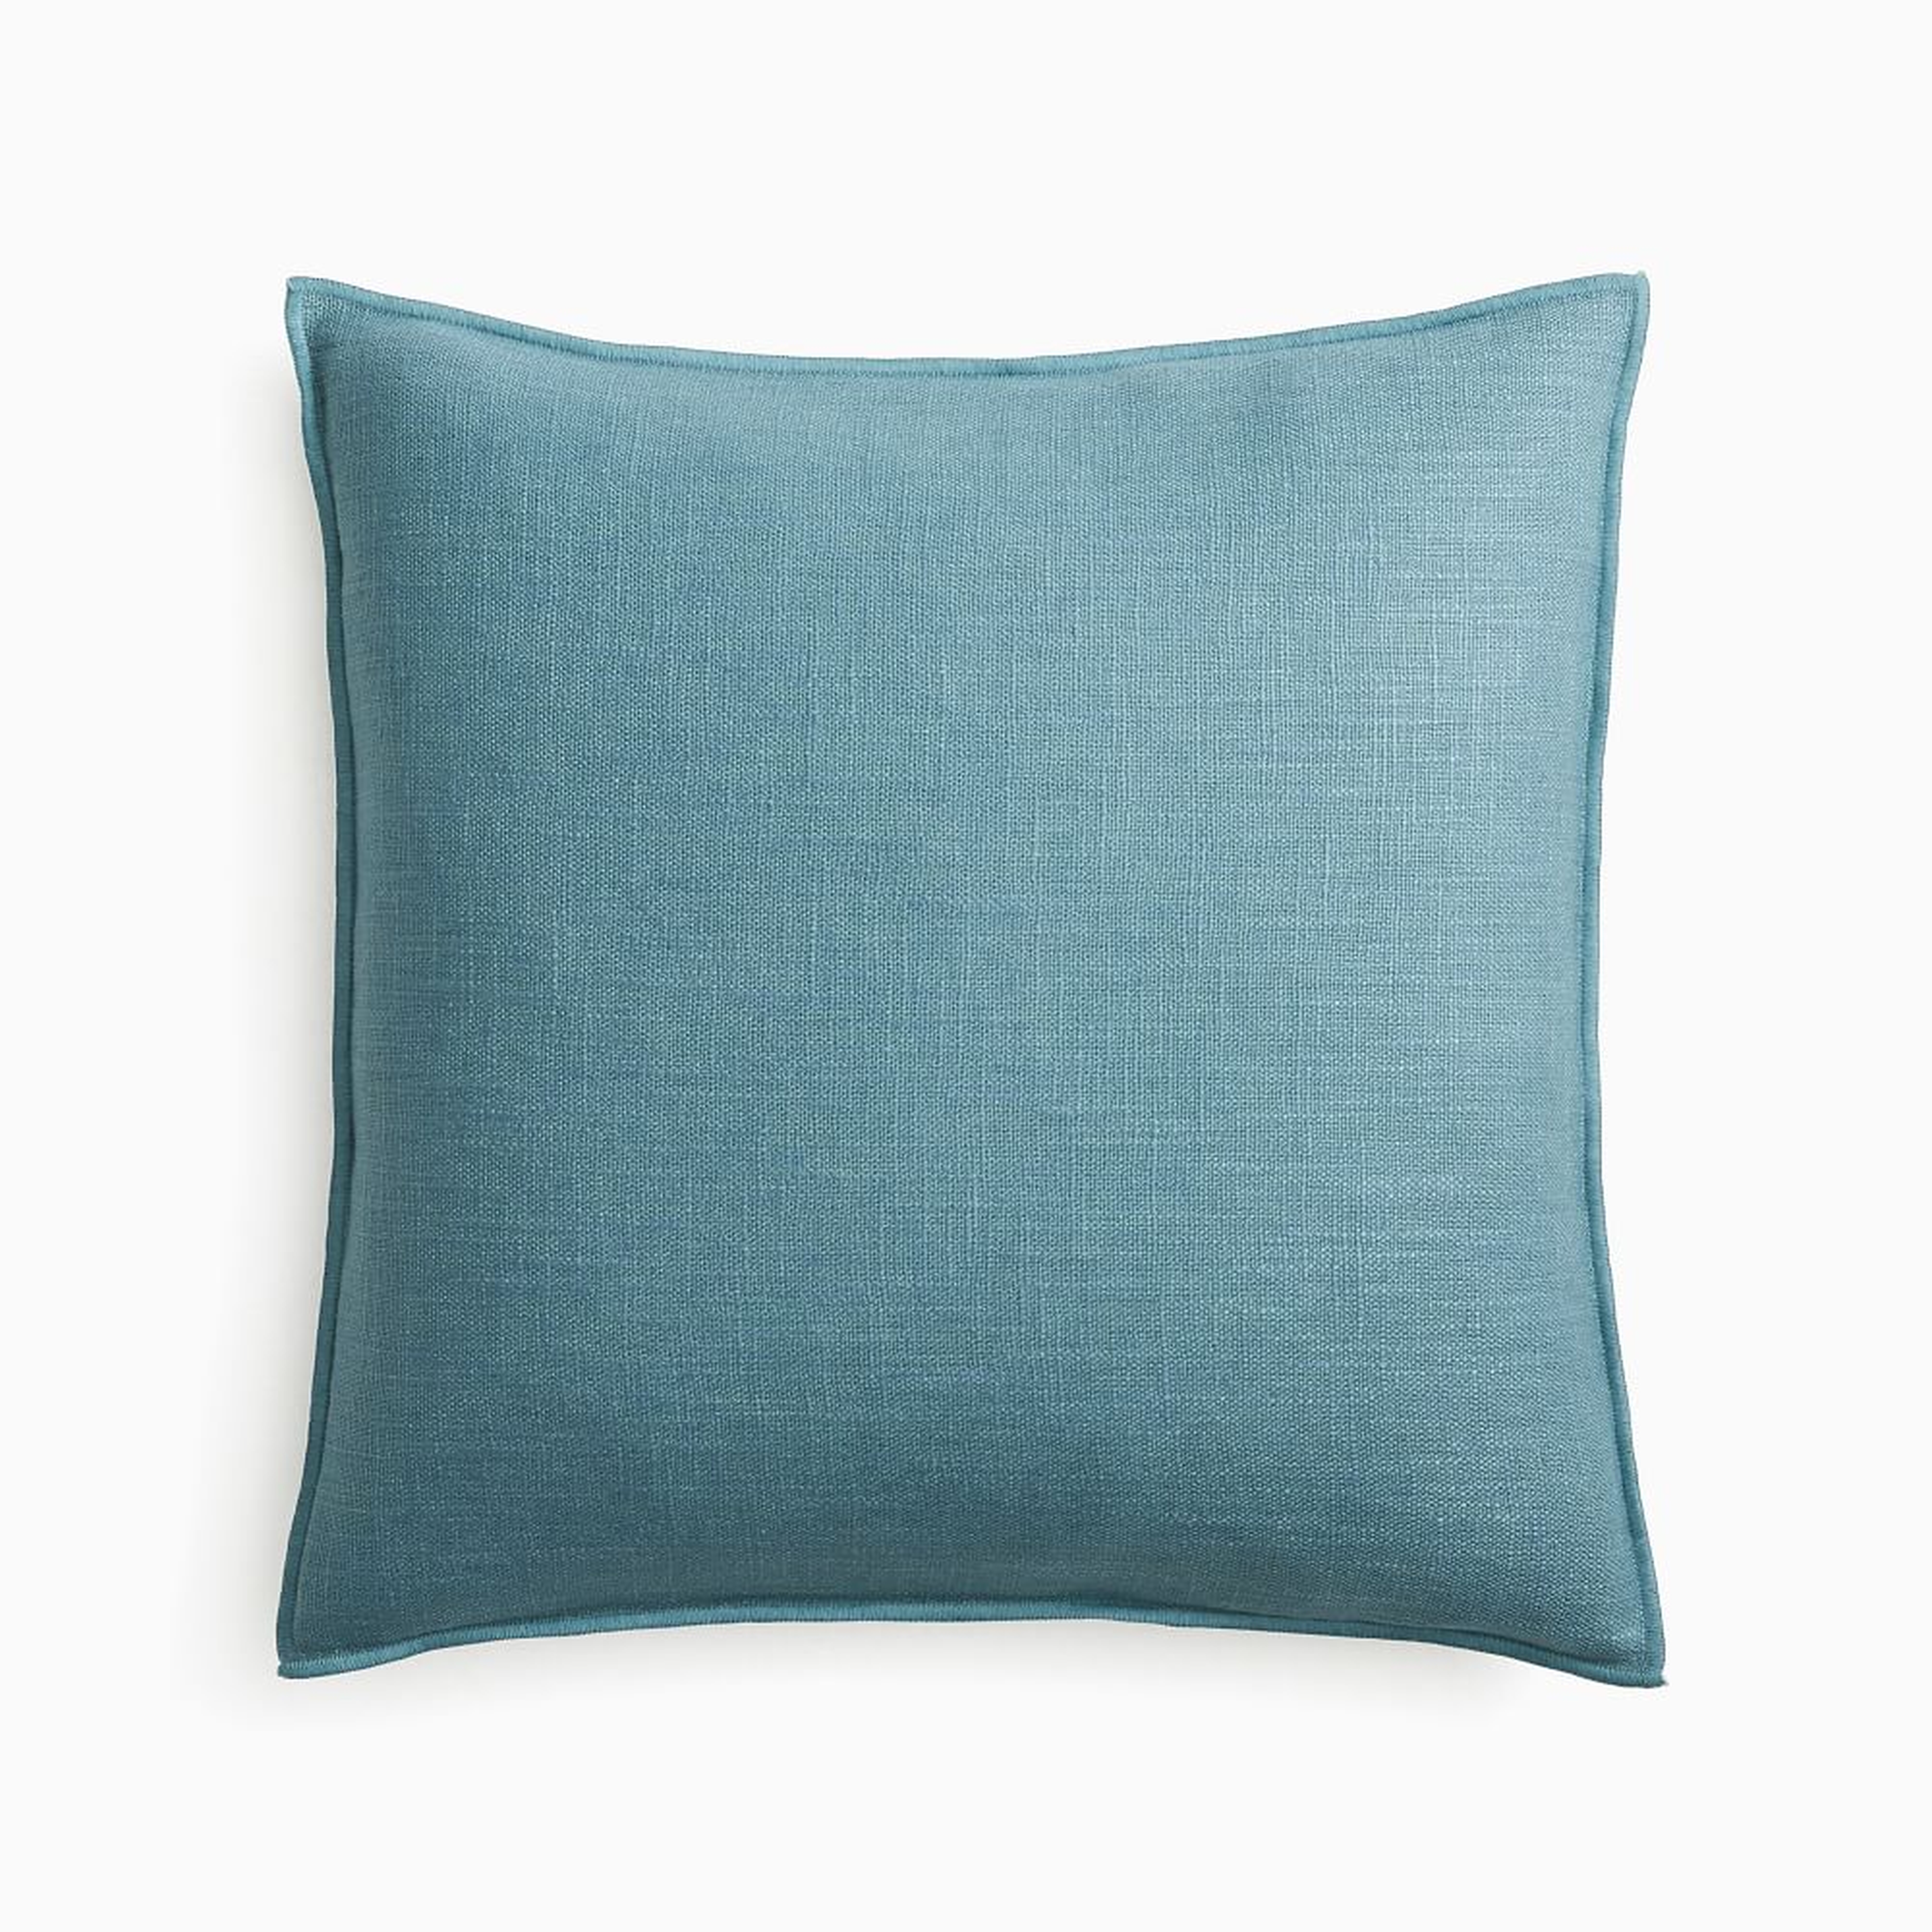 Classic Linen Pillow Cover, 20"x20", Ocean - West Elm